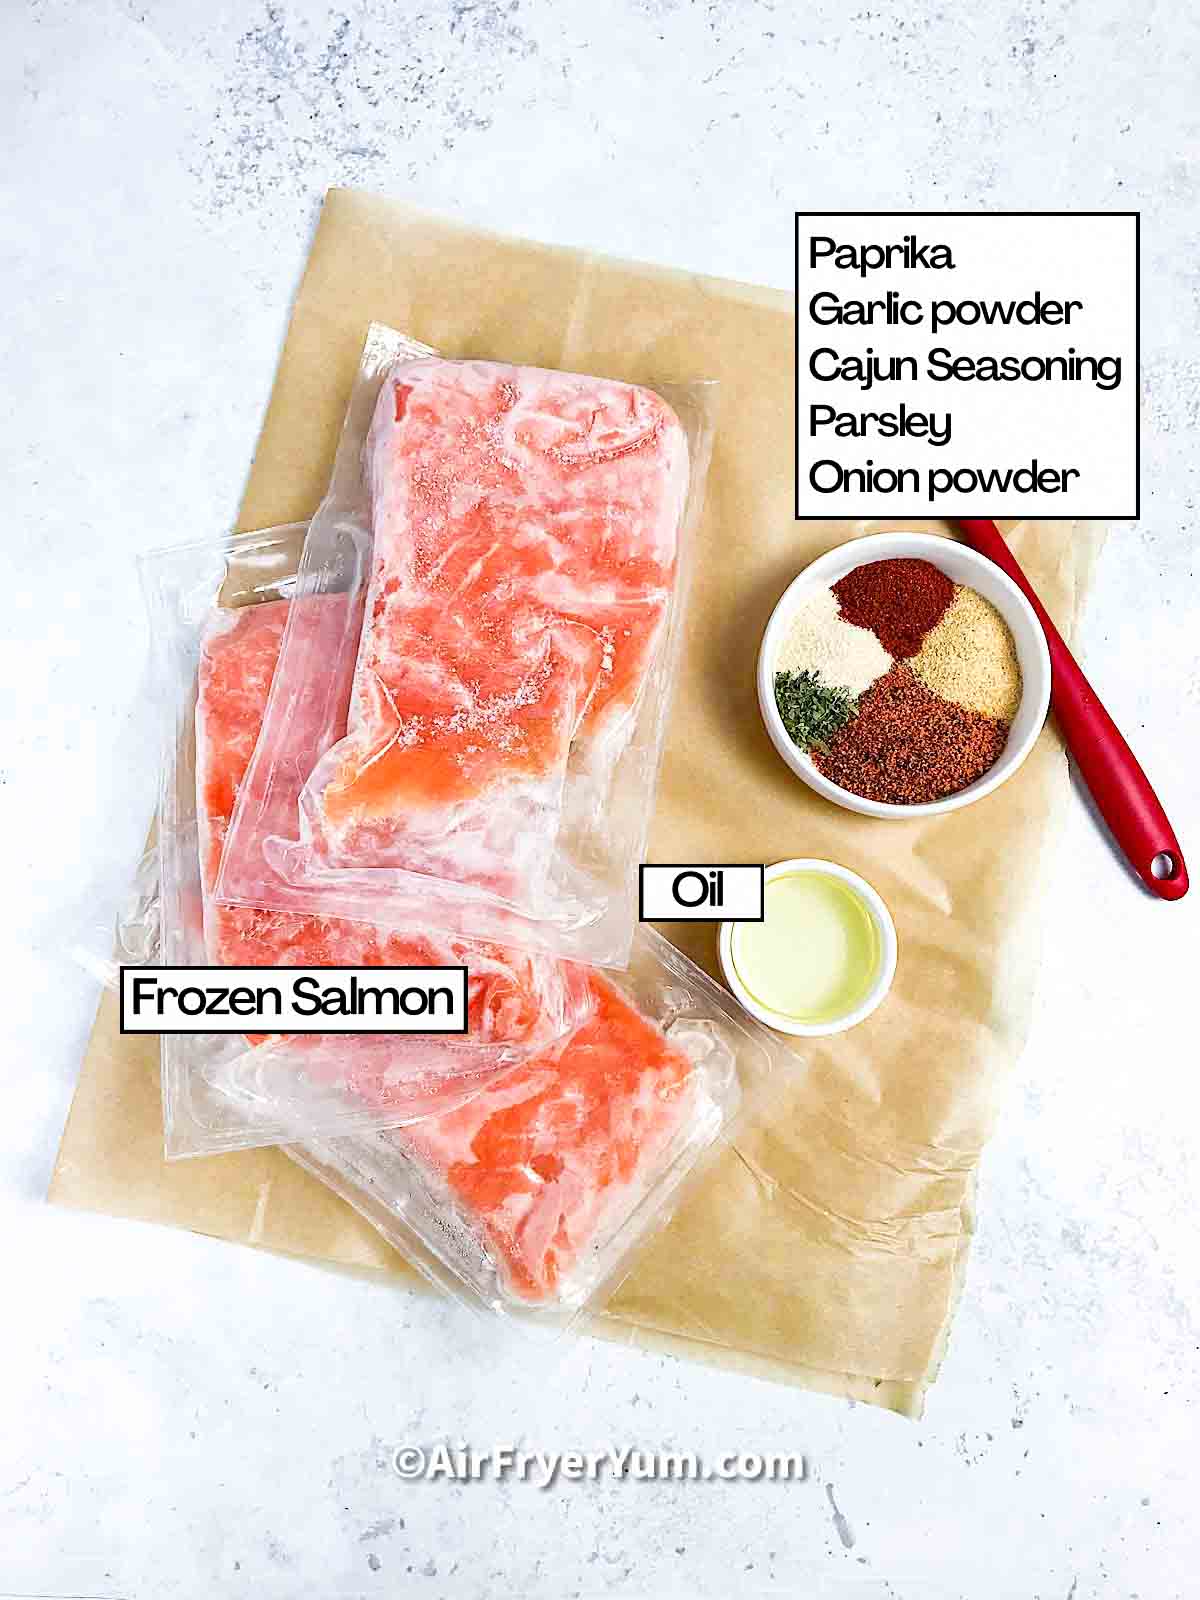 Air fryer Frozen salmon - Air Fryer Yum